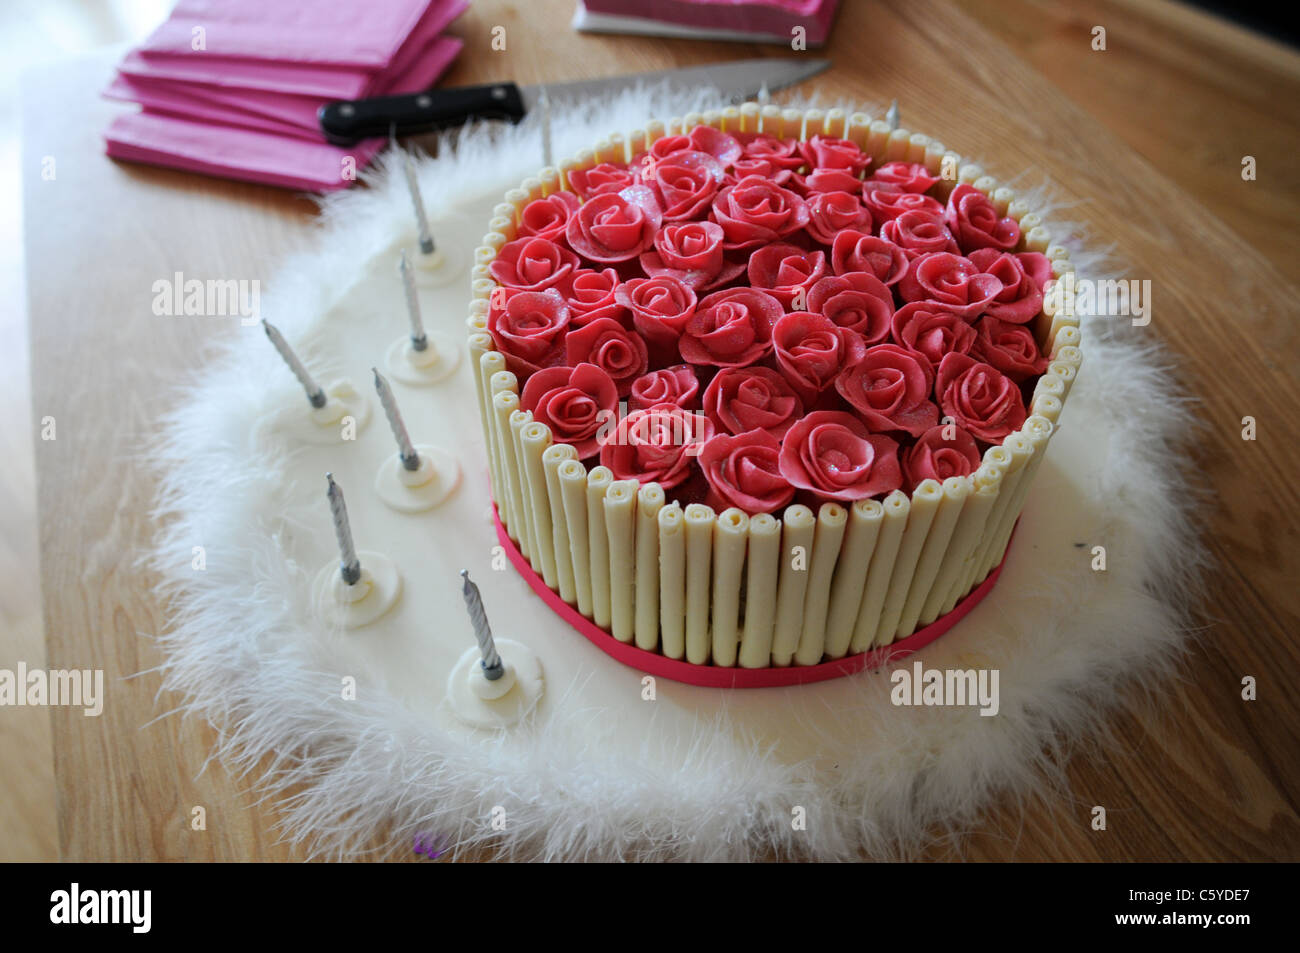 Pate A Sucre Rose Vif Roses Ornant Le Sommet D Un Gateau D Anniversaire De Luxe Designer Photo Stock Alamy